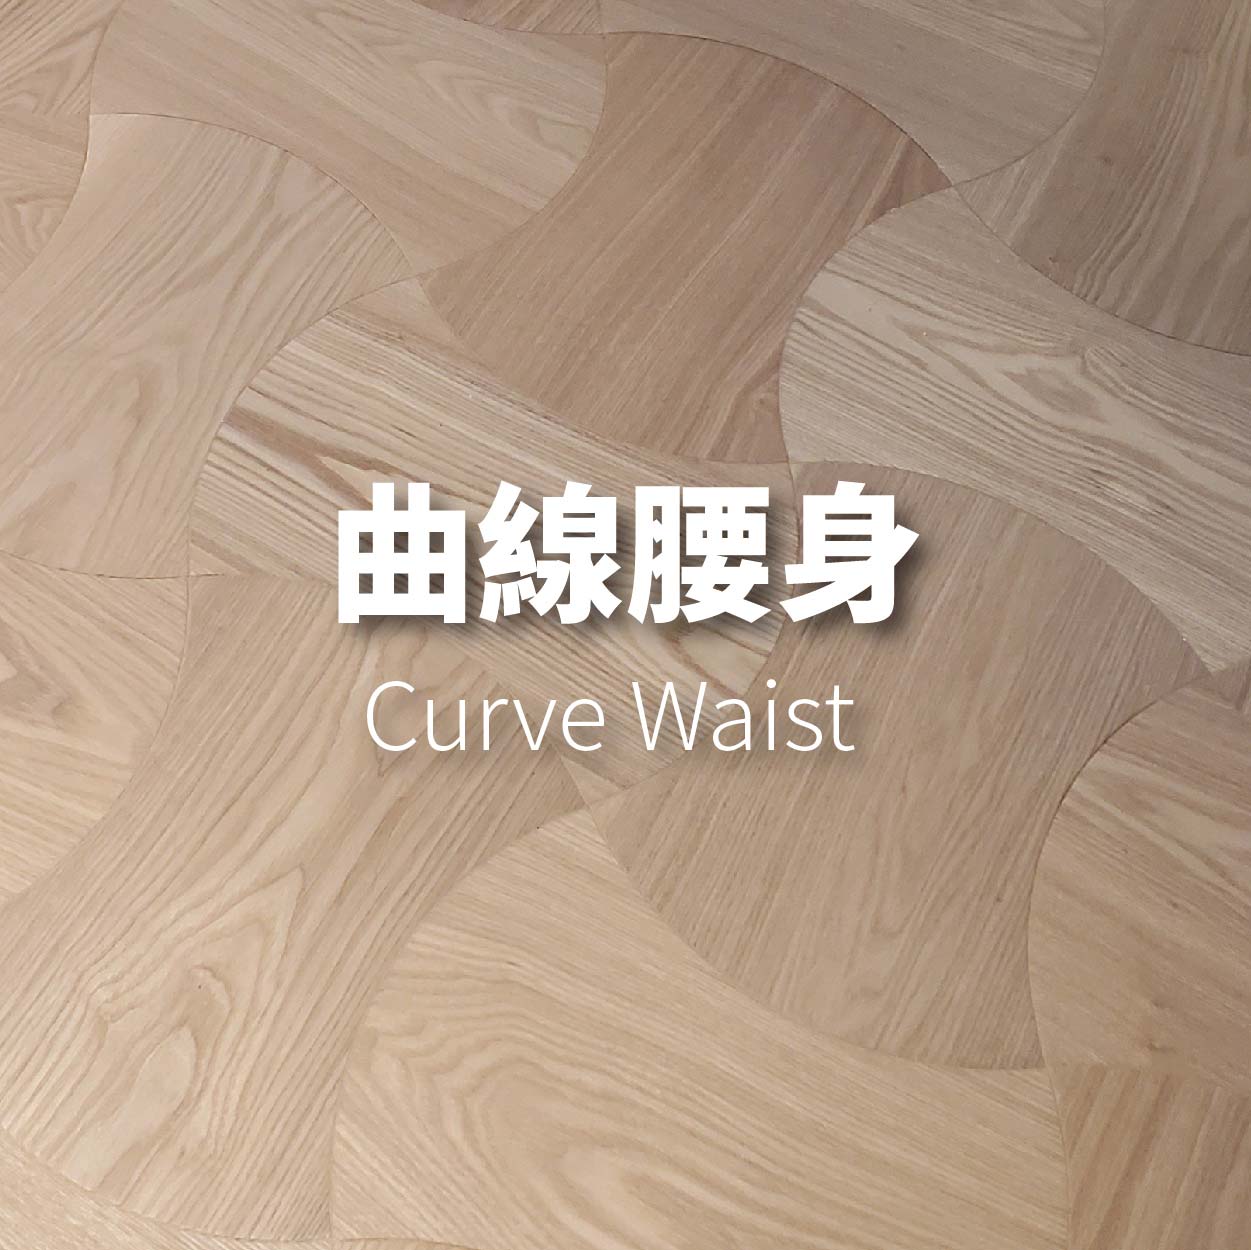 曲線腰身<p>Curve Waist</p>